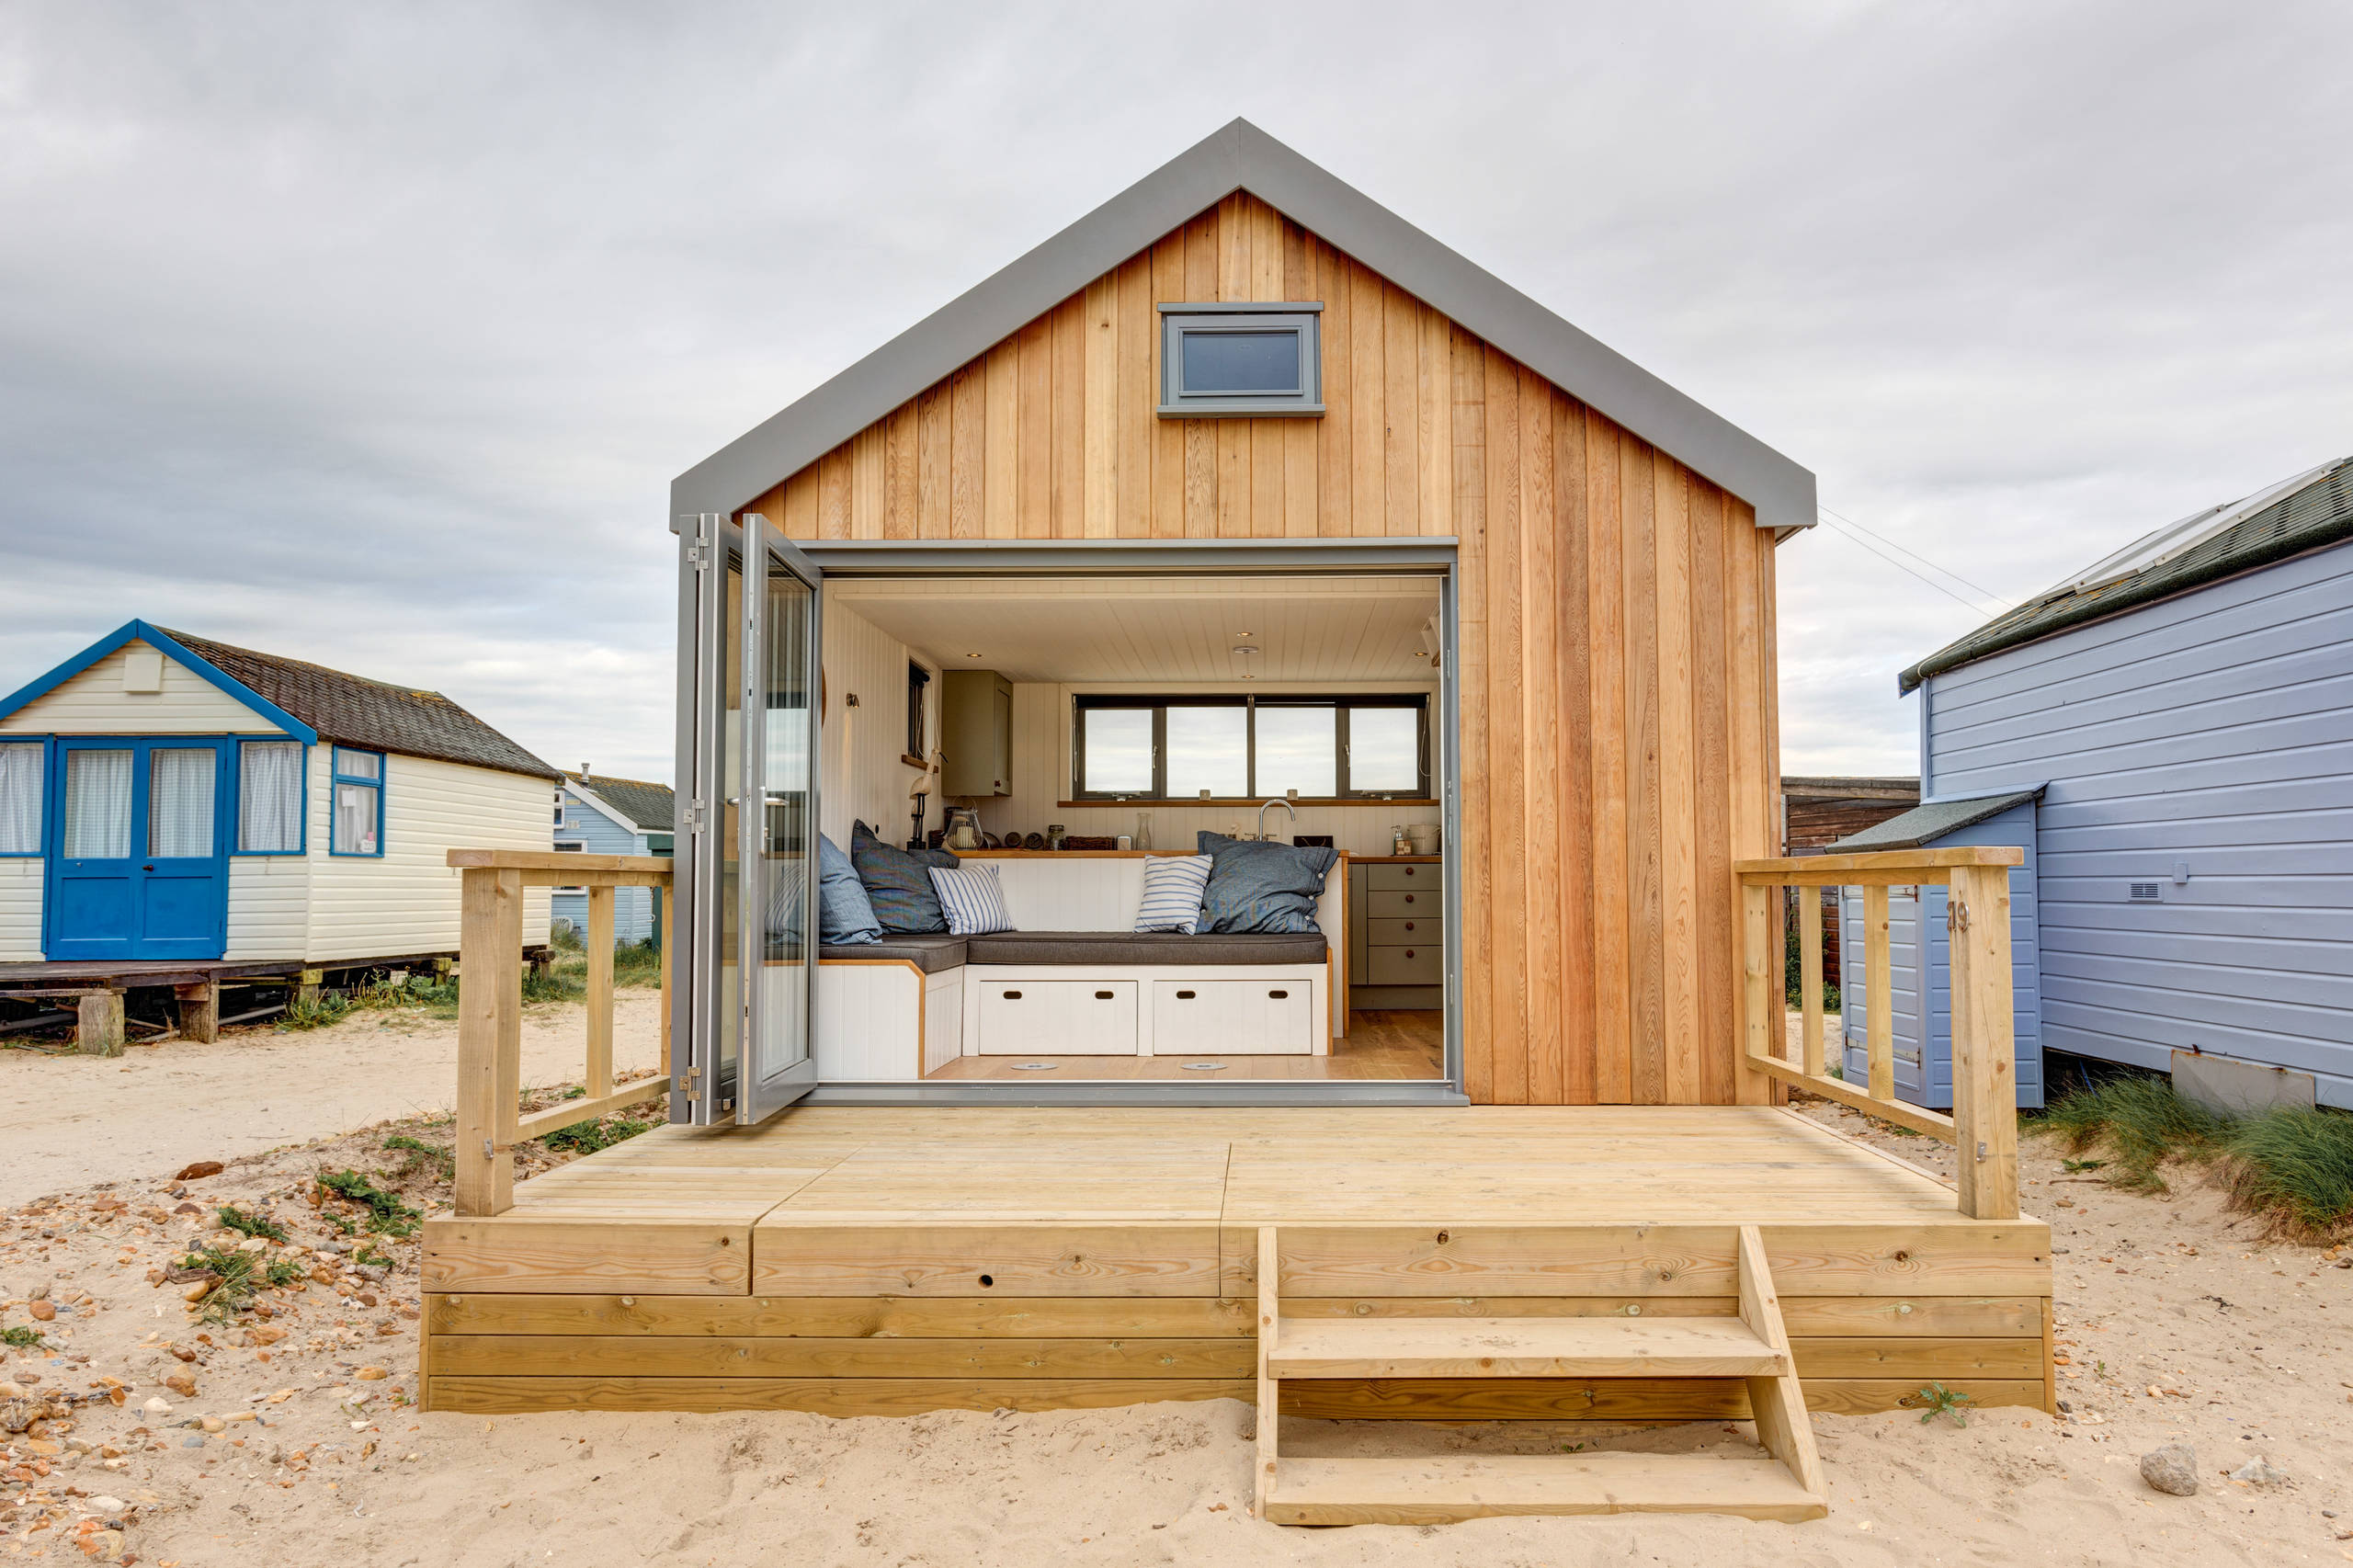 75 Small Coastal Exterior Home Ideas